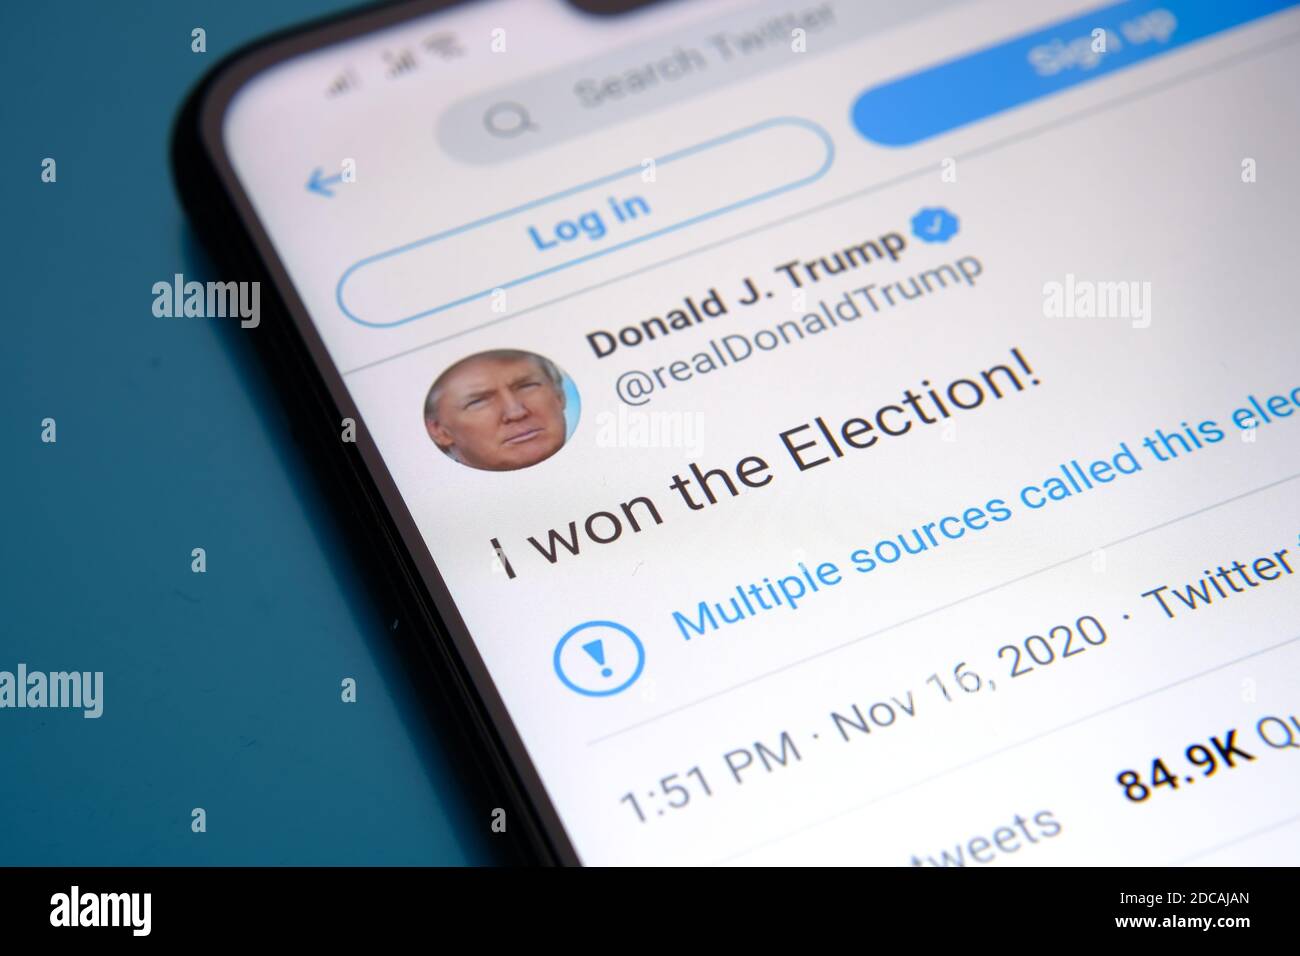 Twitter a qualifié le tweet officiel de Donald Trump « J'AI GAGNÉ L'ÉLECTION » de « défait ». La page s'affiche sur l'écran du smartphone. Concept. Mise au point sélective Banque D'Images